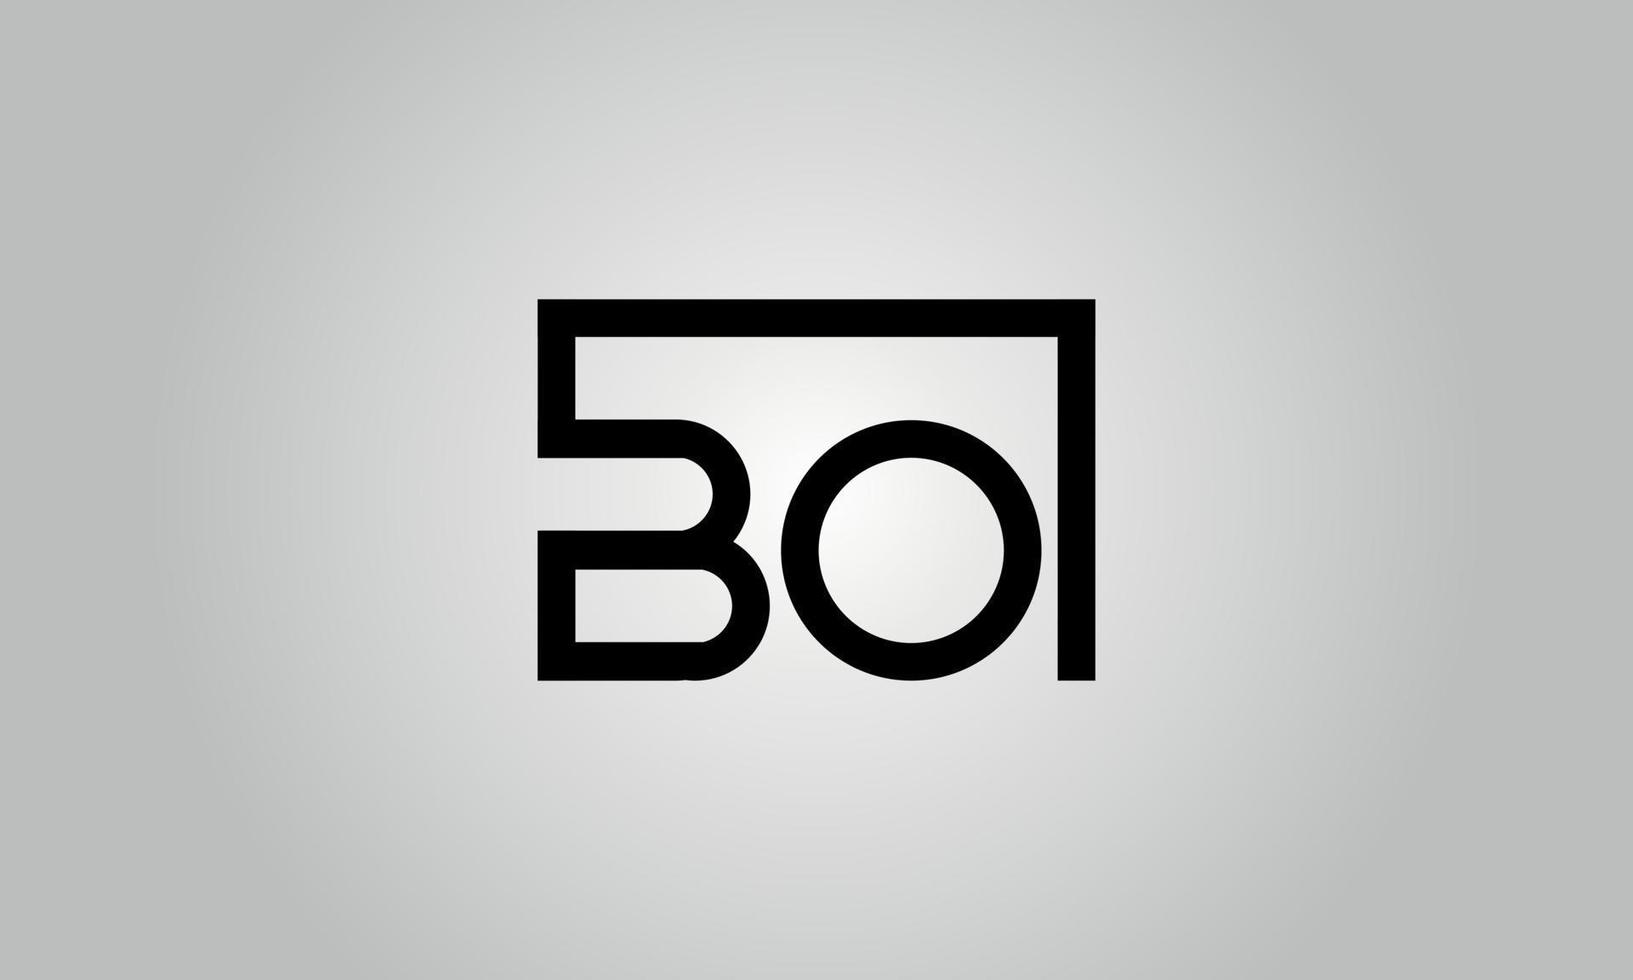 diseño del logotipo de la letra bo. logotipo de bo con forma cuadrada en colores negros vector plantilla de vector libre.